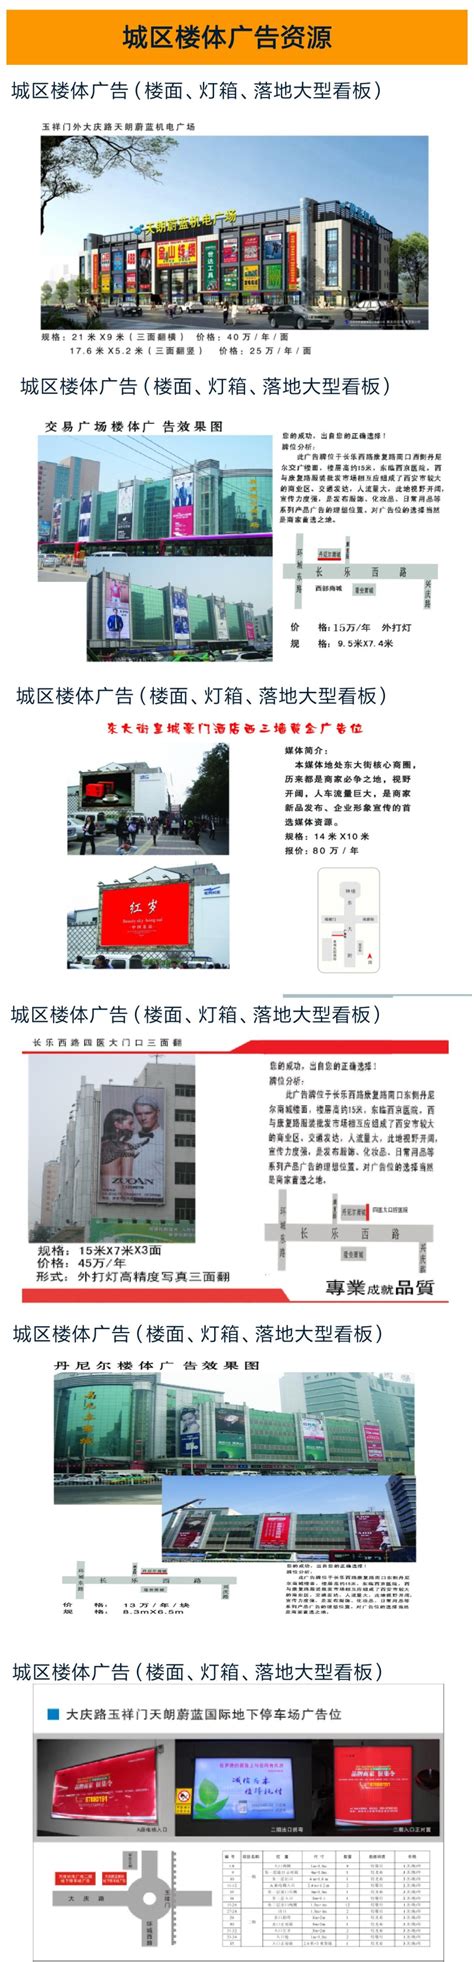 陕西户外广告公司_西安led广告发布_陕西高速车体广告-陕西宝源广告传媒